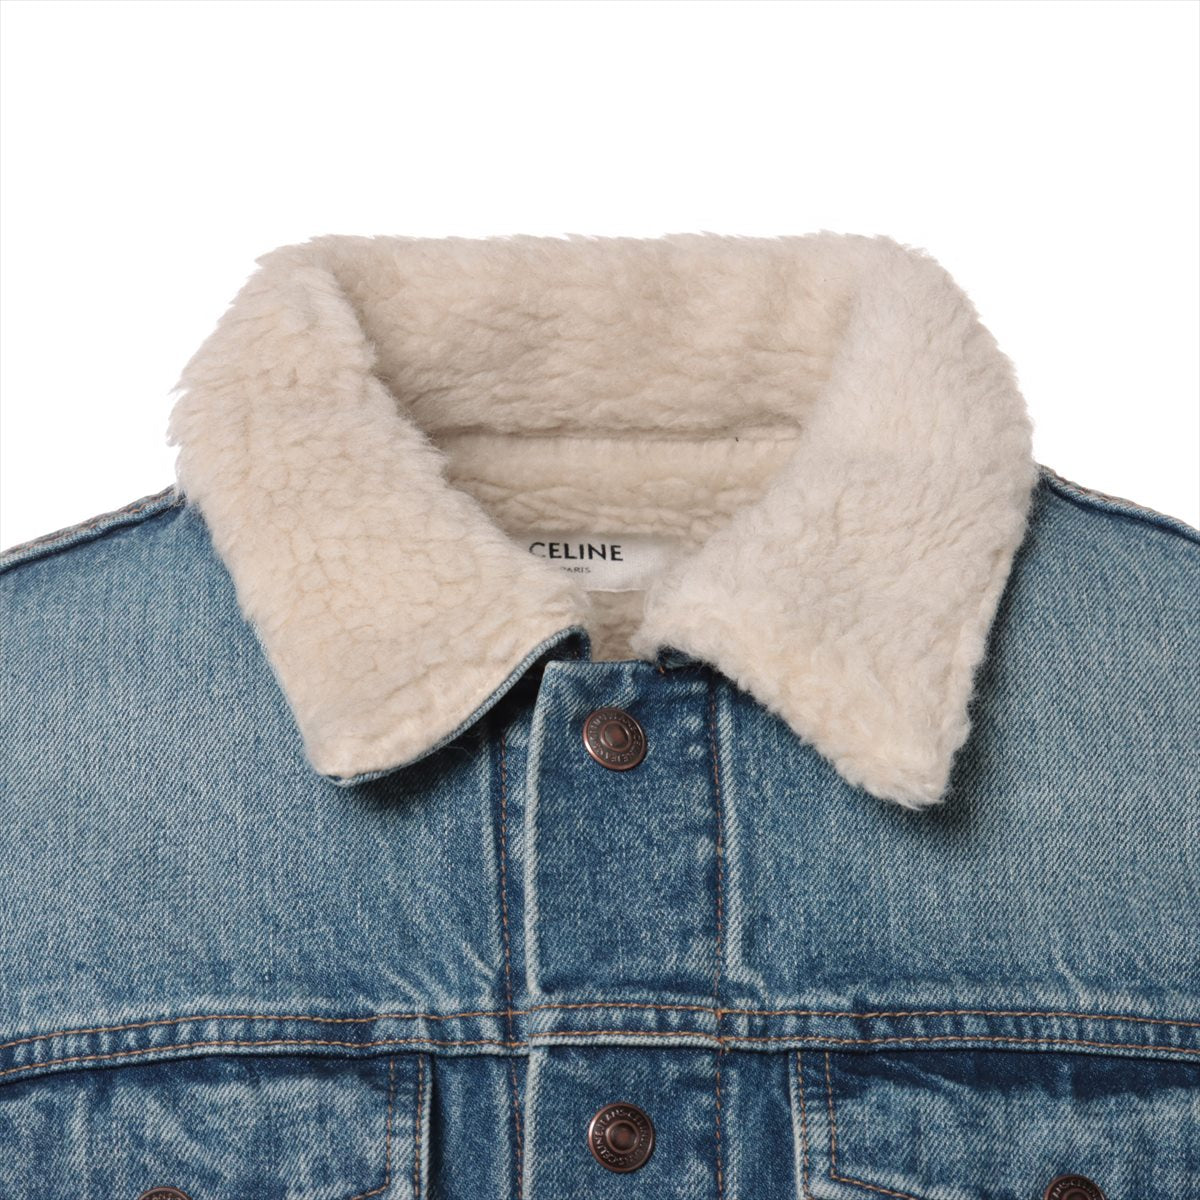 CELINE Cotton & Wool Denim jacket Men's Blue indigo